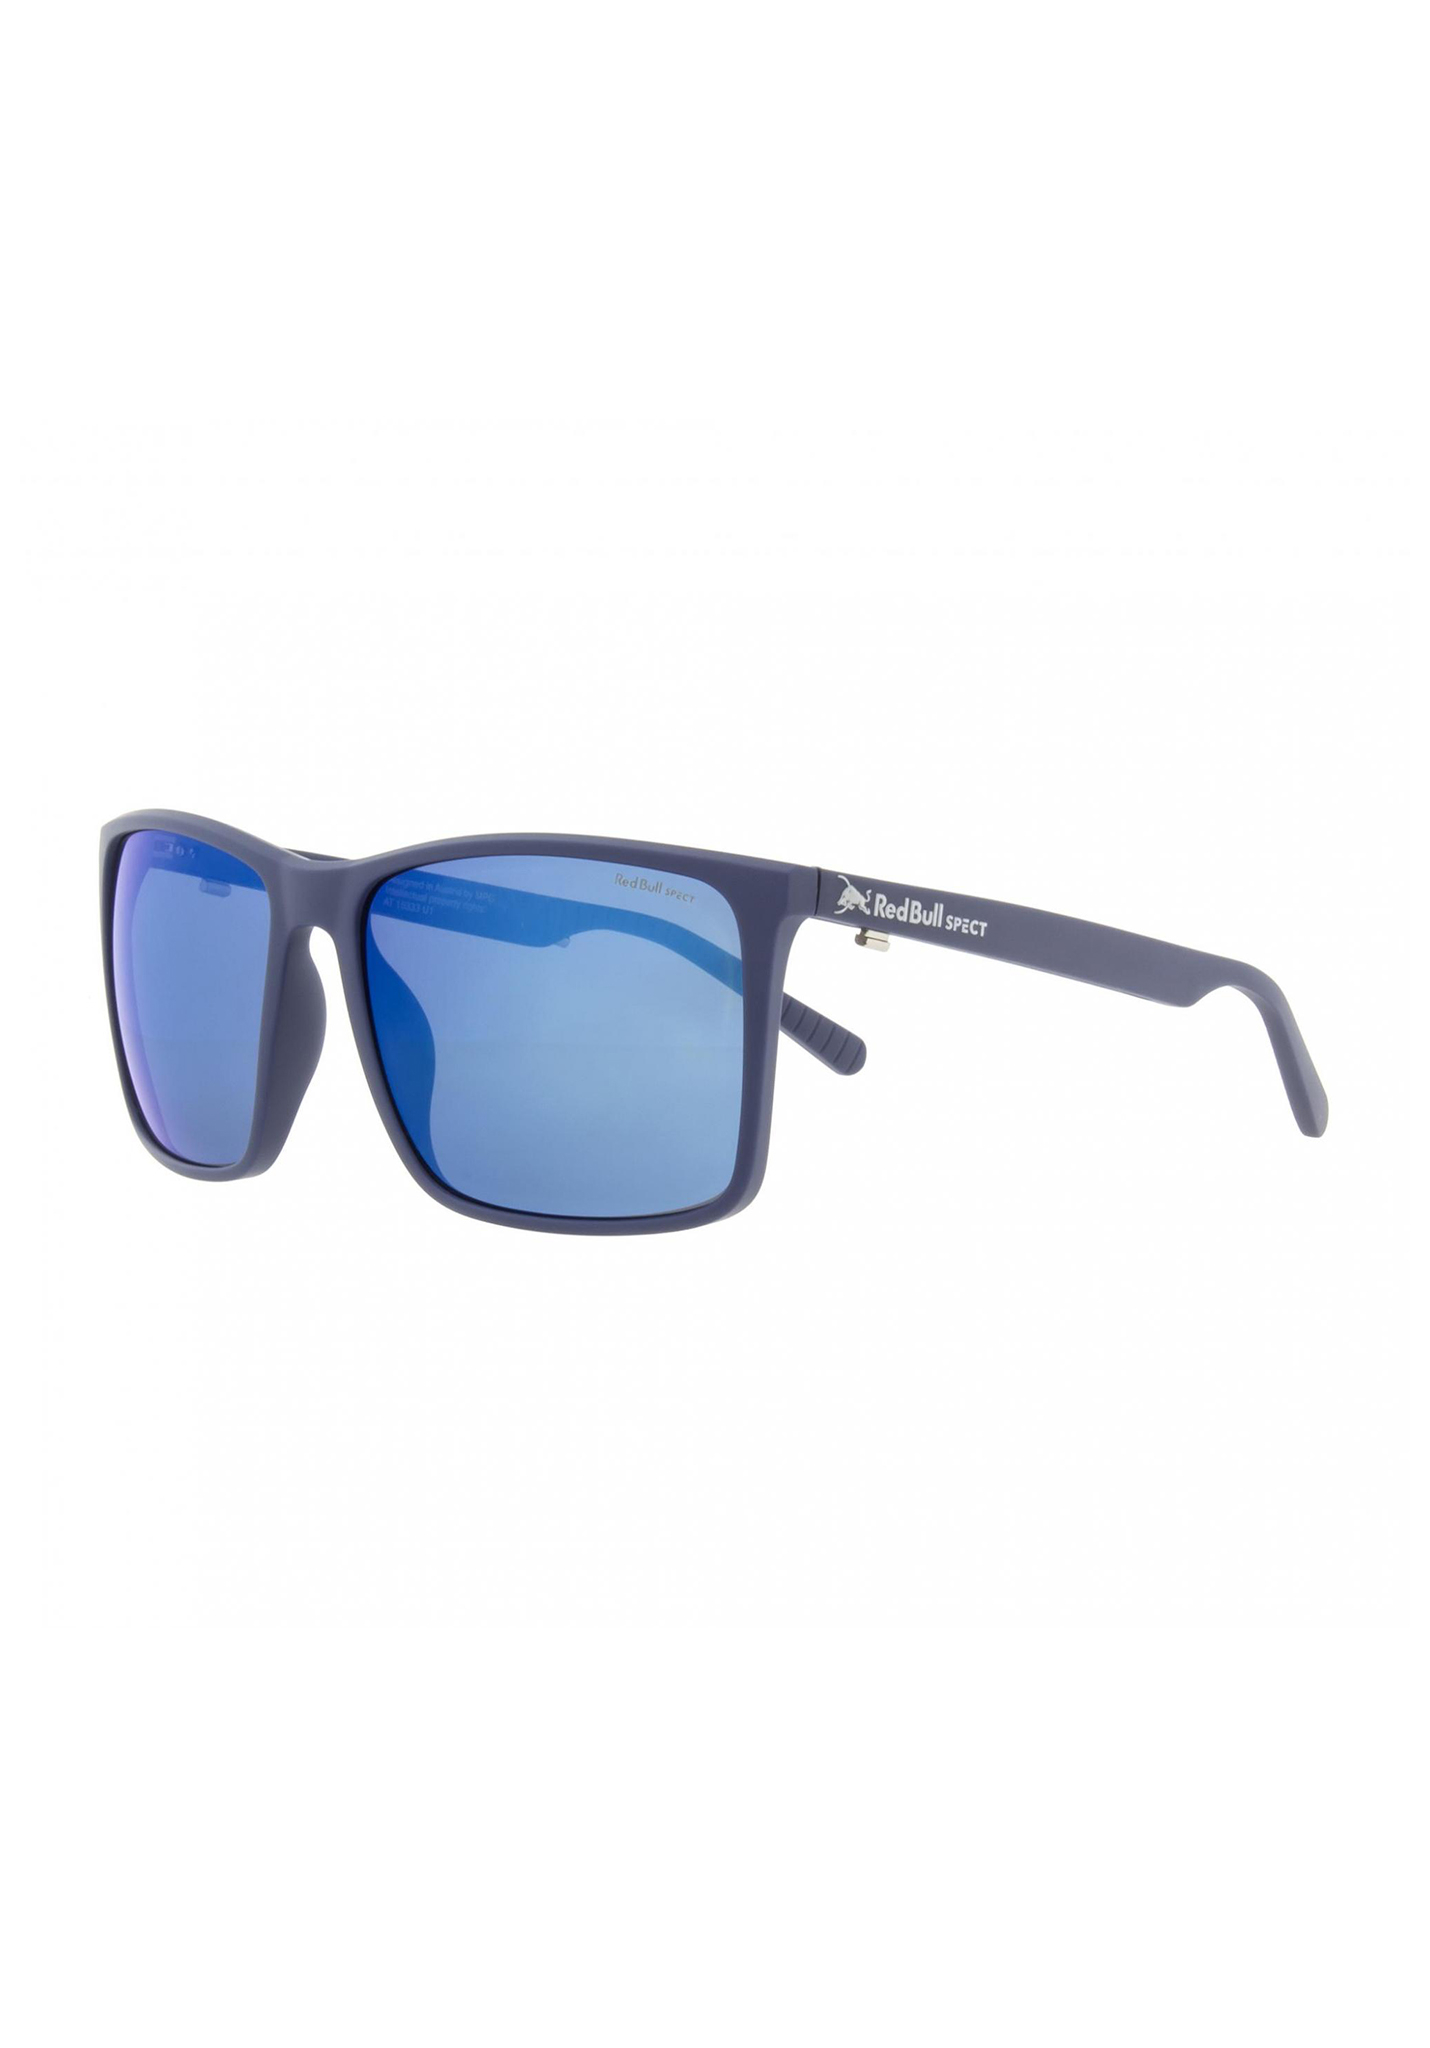 Red Bull SPECT Eyewear Bow Sonnenbrillen blau/rauch mit blauem spiegel pol One Size